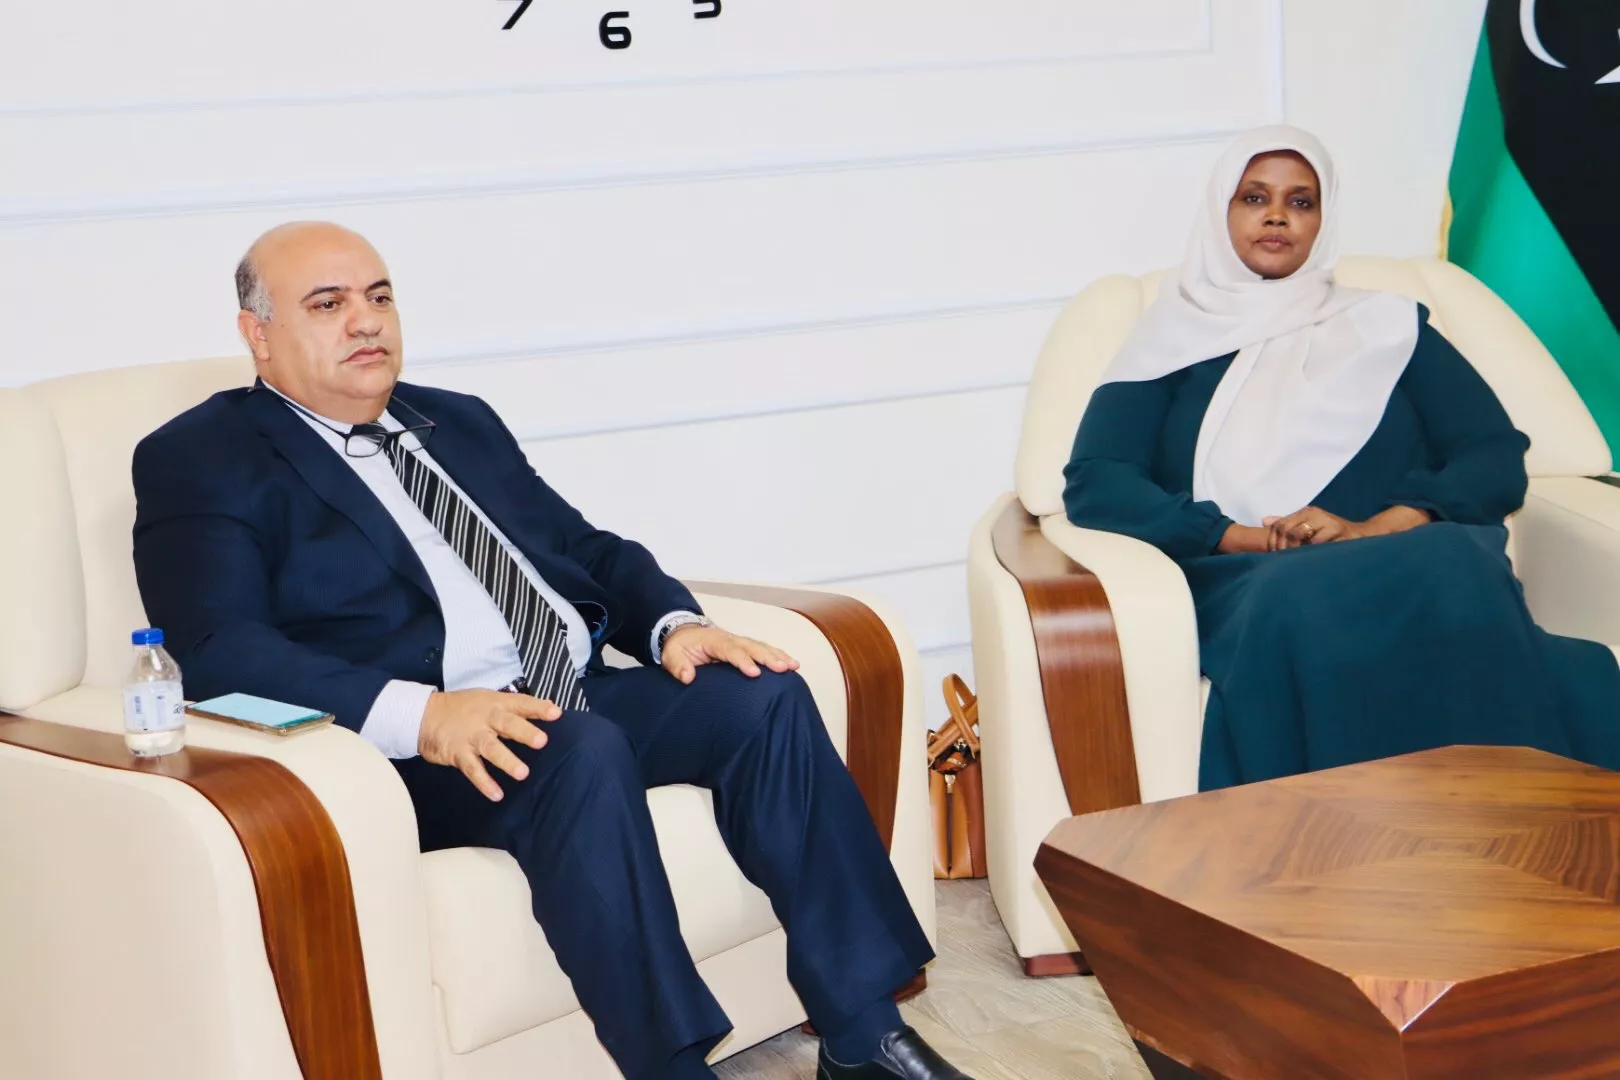 زيارة الأستاذة مبروكة توغي وزيرة الثقافة والتنمية المعرفية اليوم الخميس 4 أغسطس 2022 بزيارة الأكاديمية الليبية للدراسات العليا، حيث كان في استقبالها رئيس الأكاديمية الاستاذ الدكتور رمضان المدني.